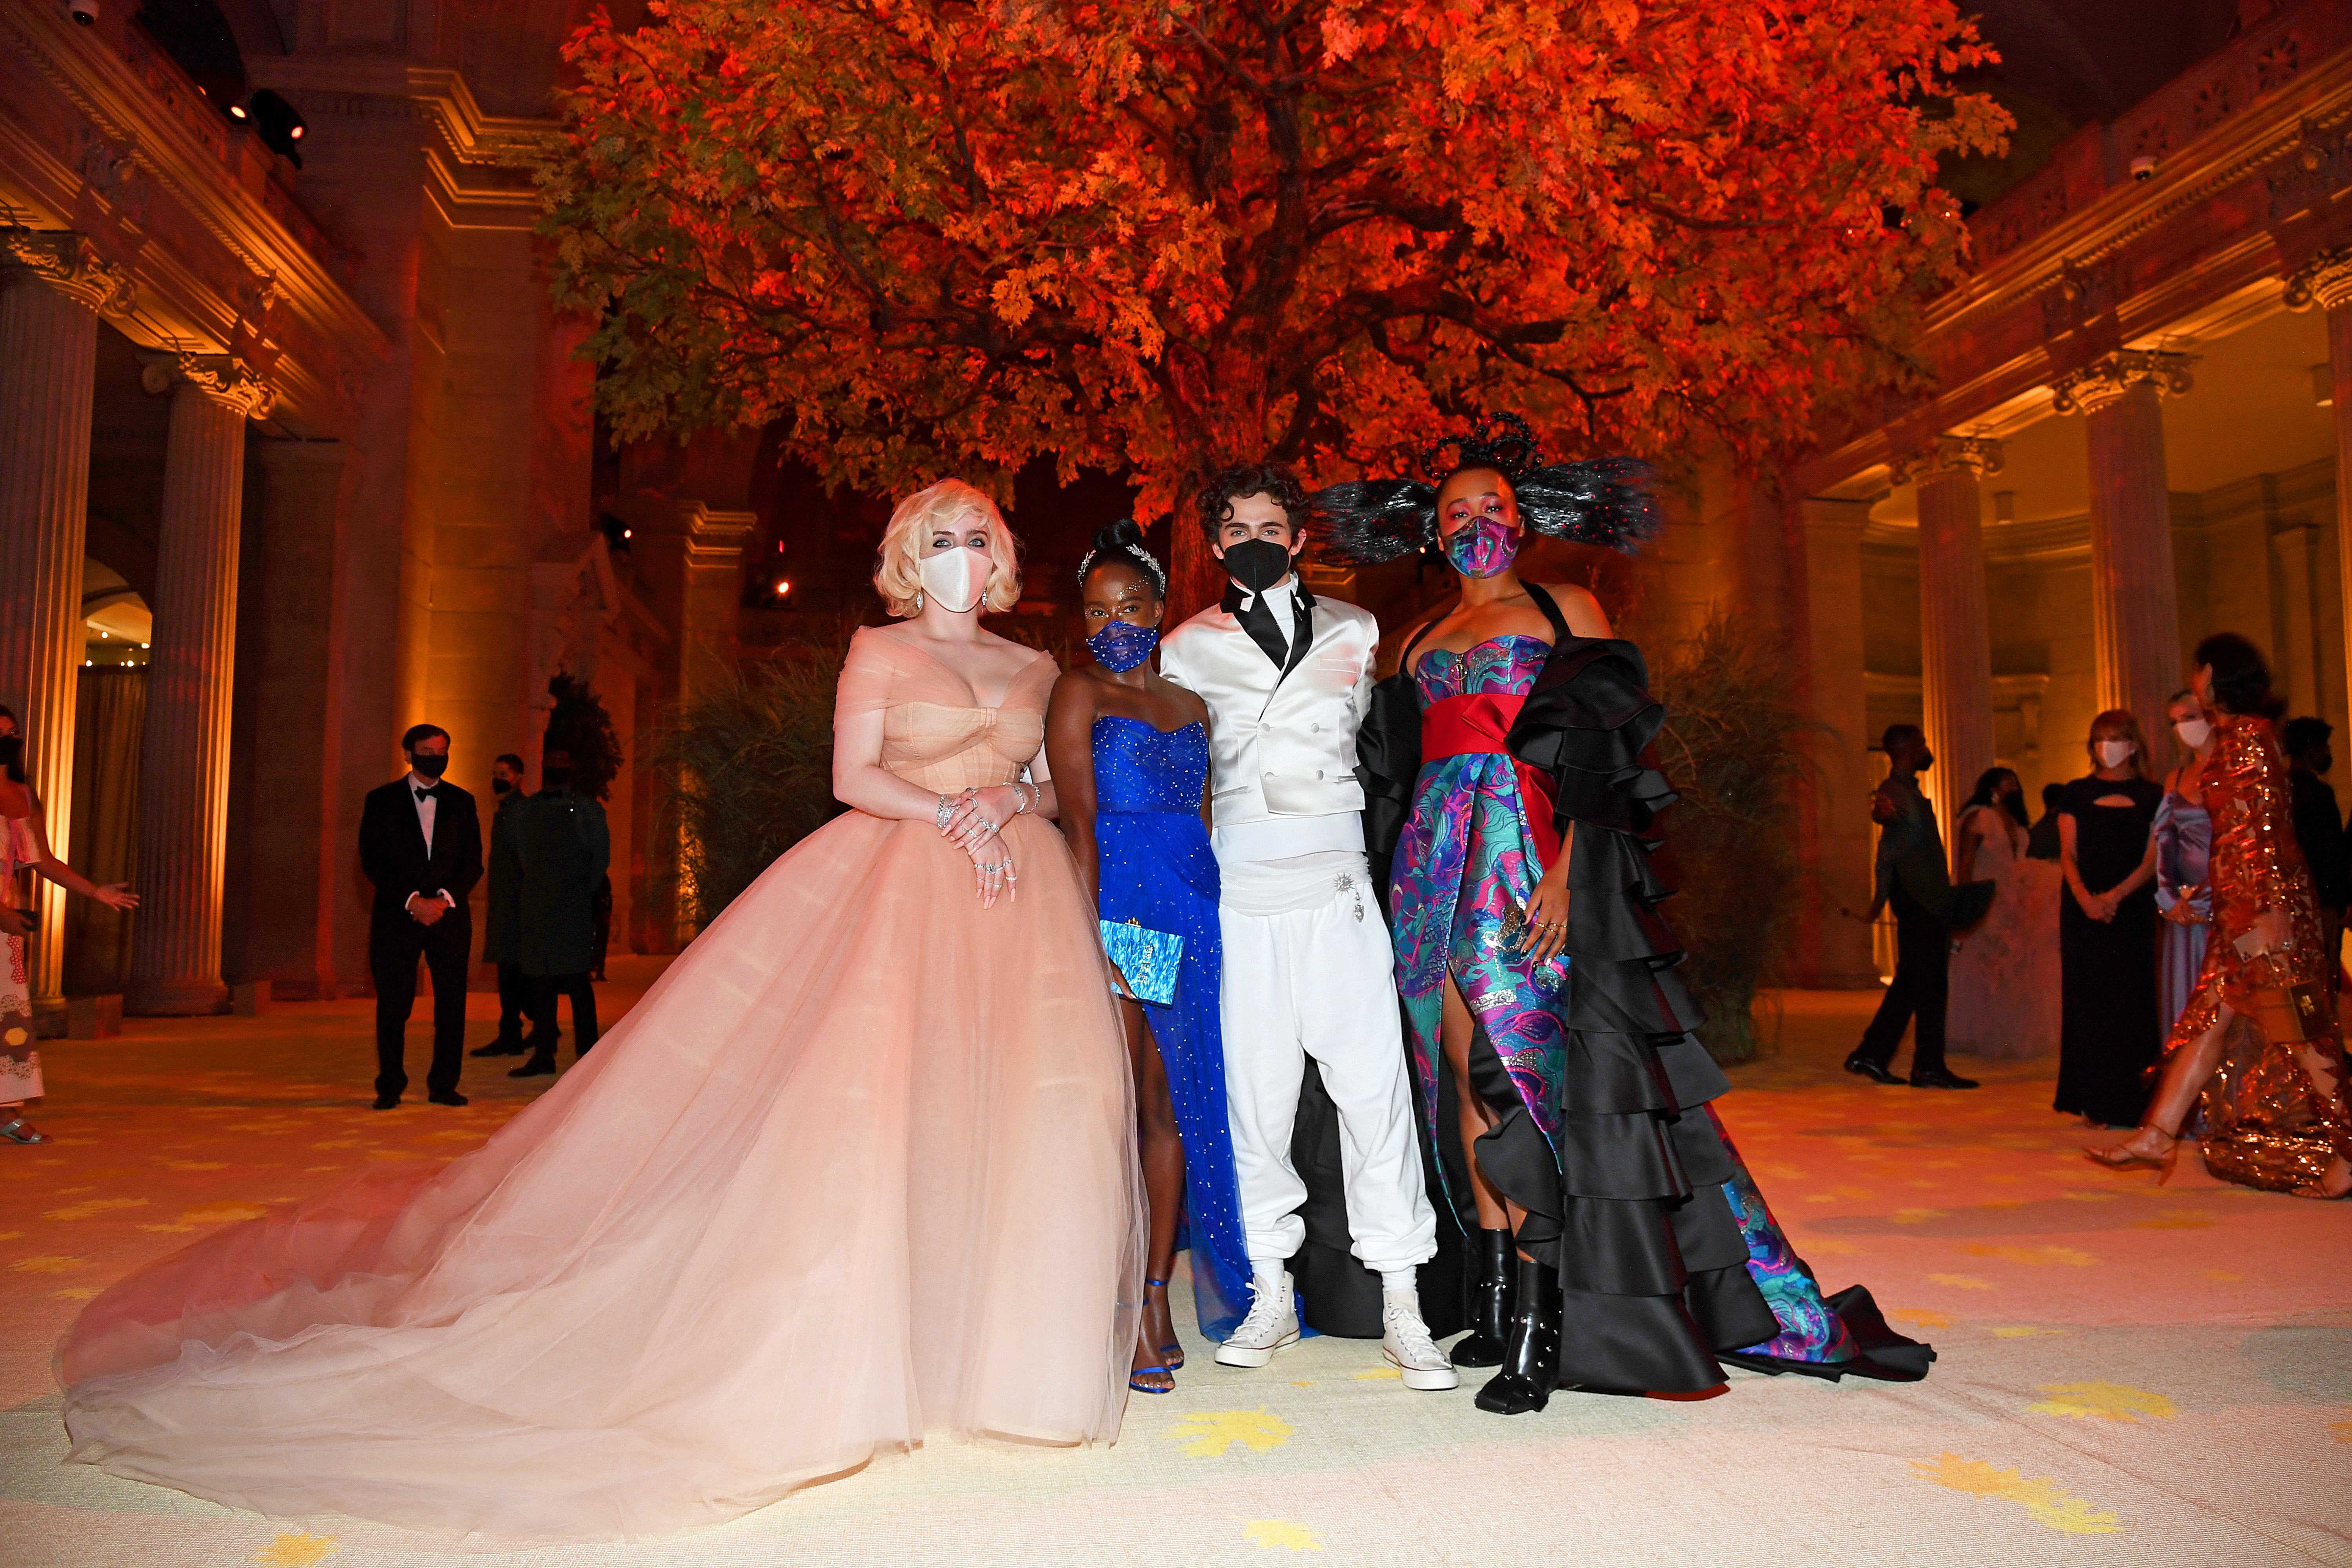 Celebrities Wearing Louis Vuitton at the Met Gala 2016